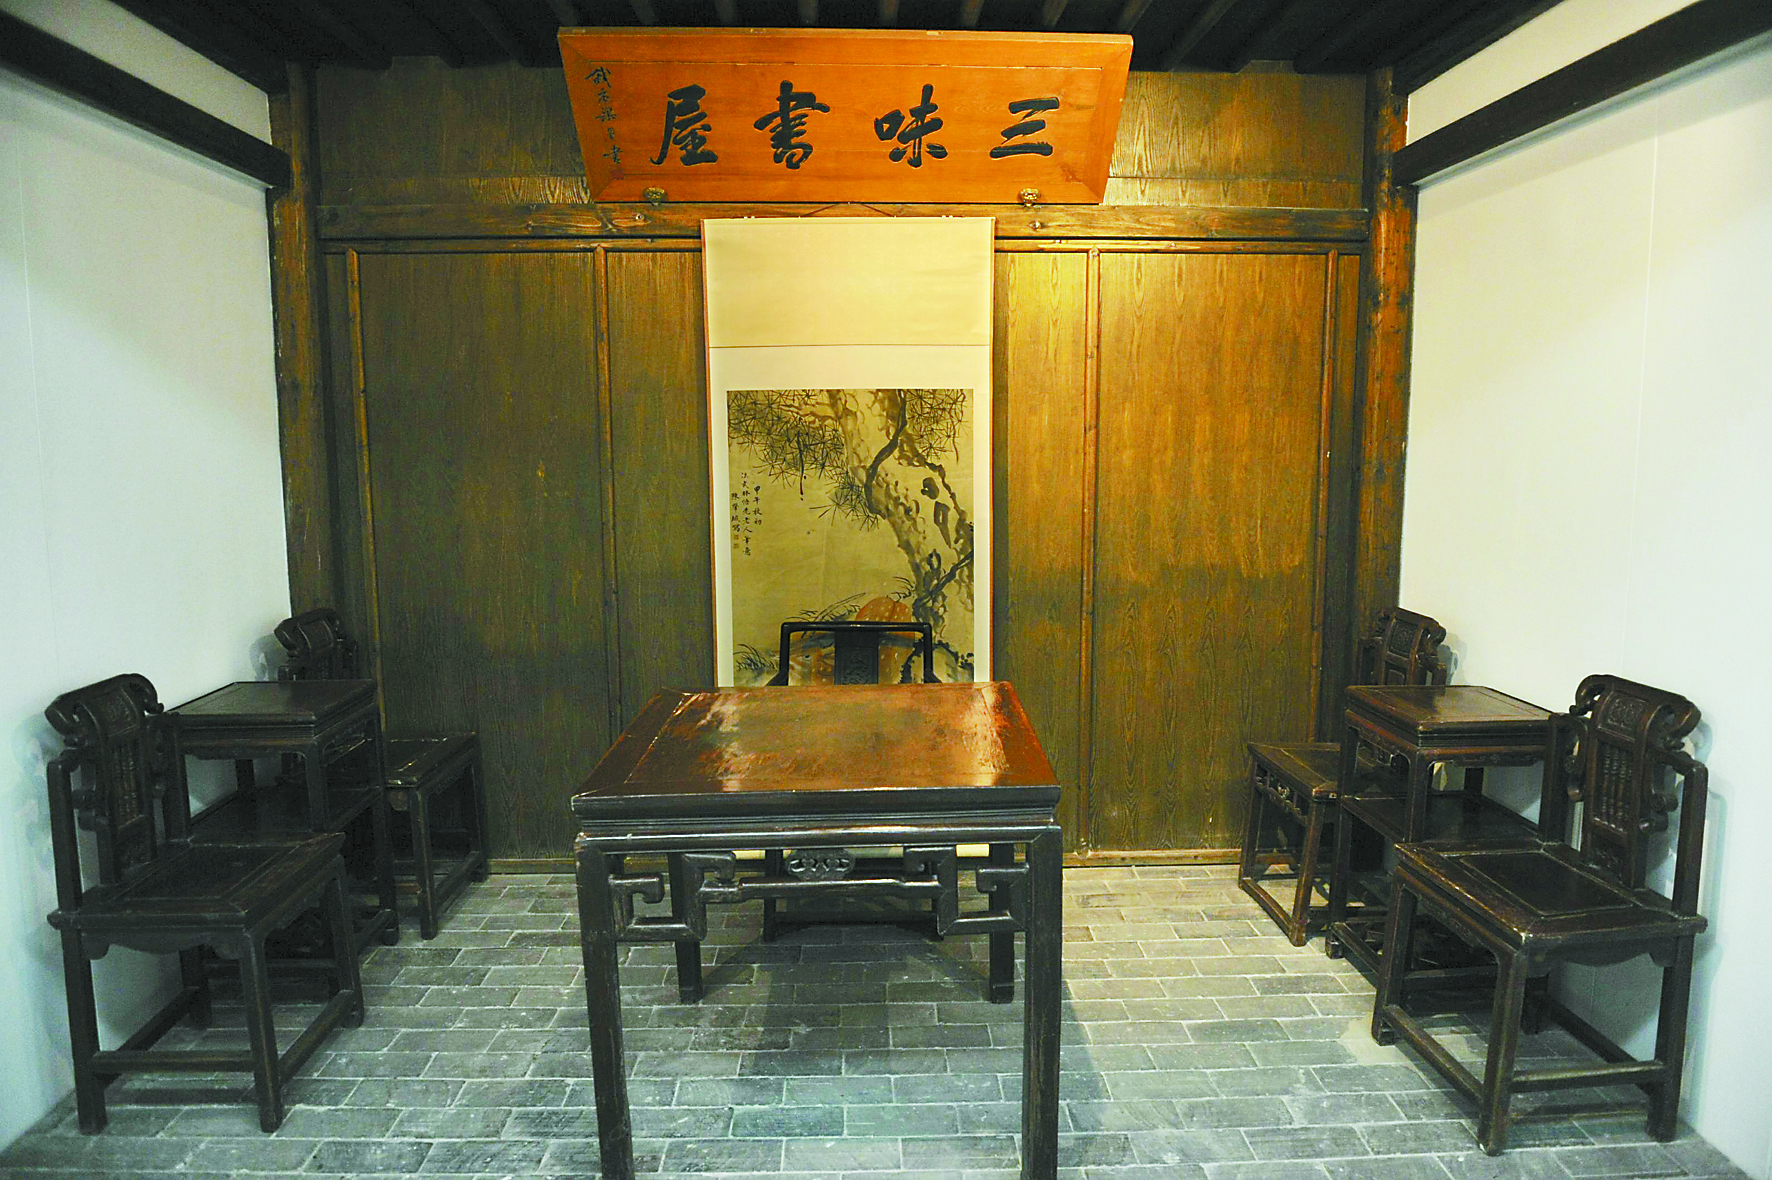 魯迅博物館陳列廳內的“三味書屋”模型 新華社圖